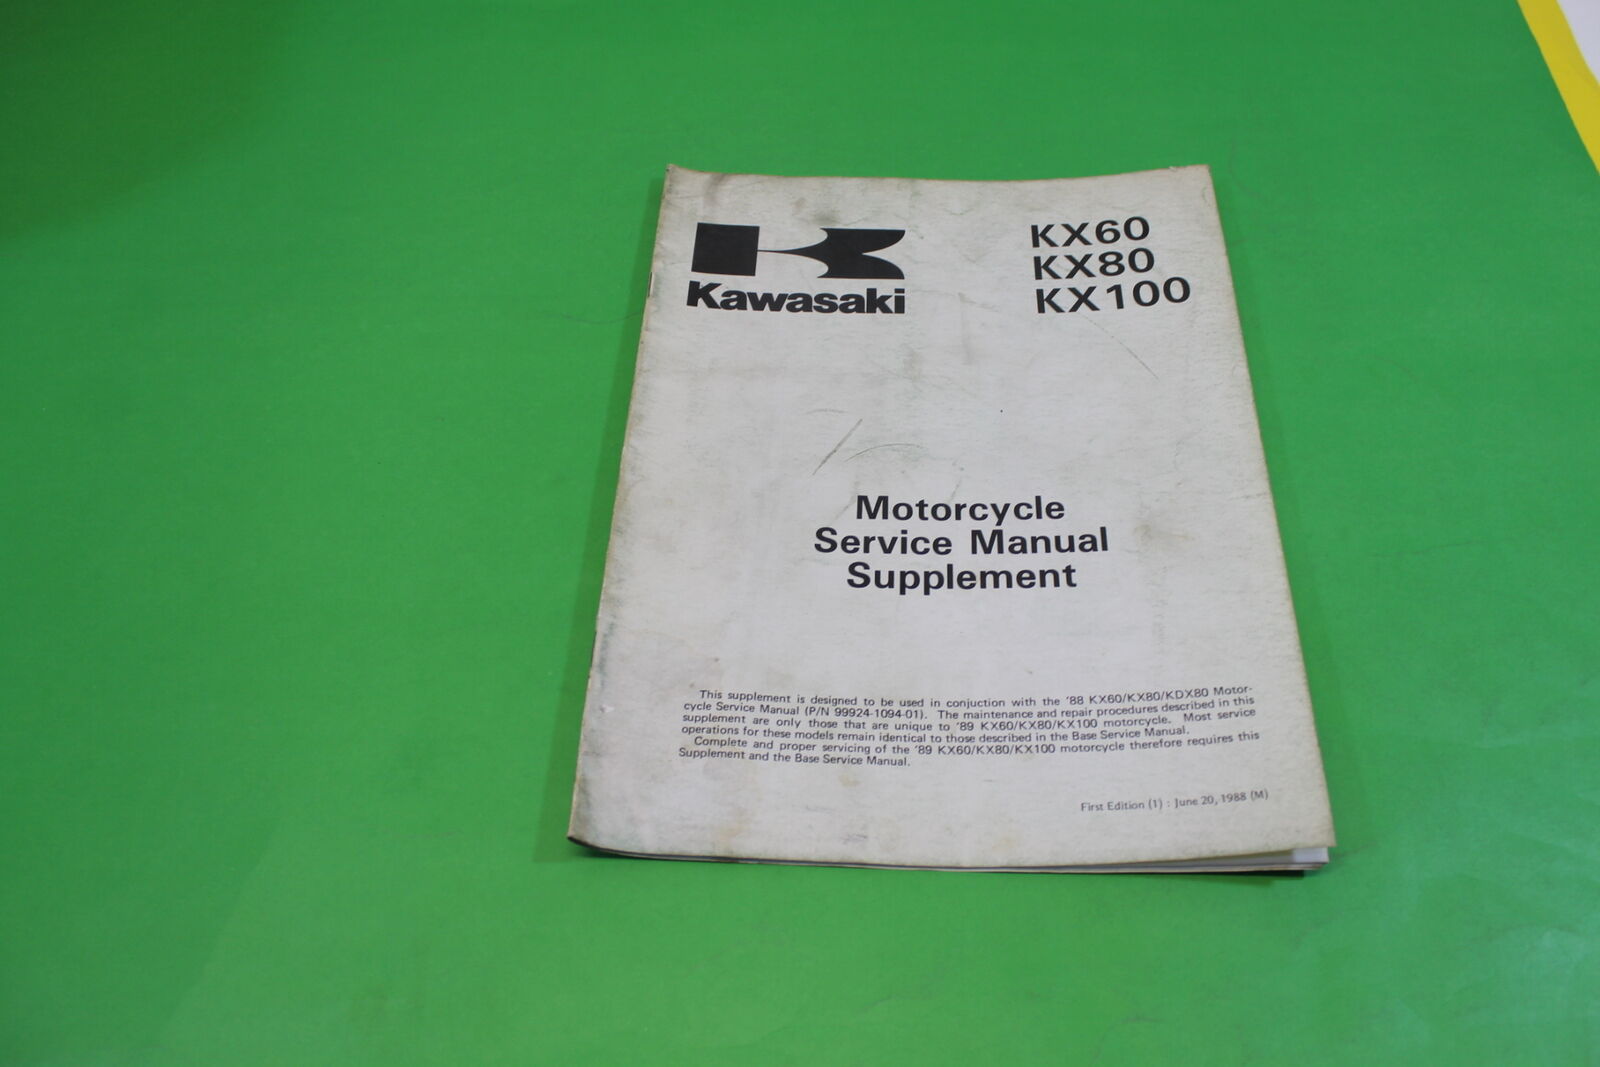 OEM Kawasaki KX60 KX80 KX100 1989 M/C Service Manual SUPPLEMENT 99924-1123-51